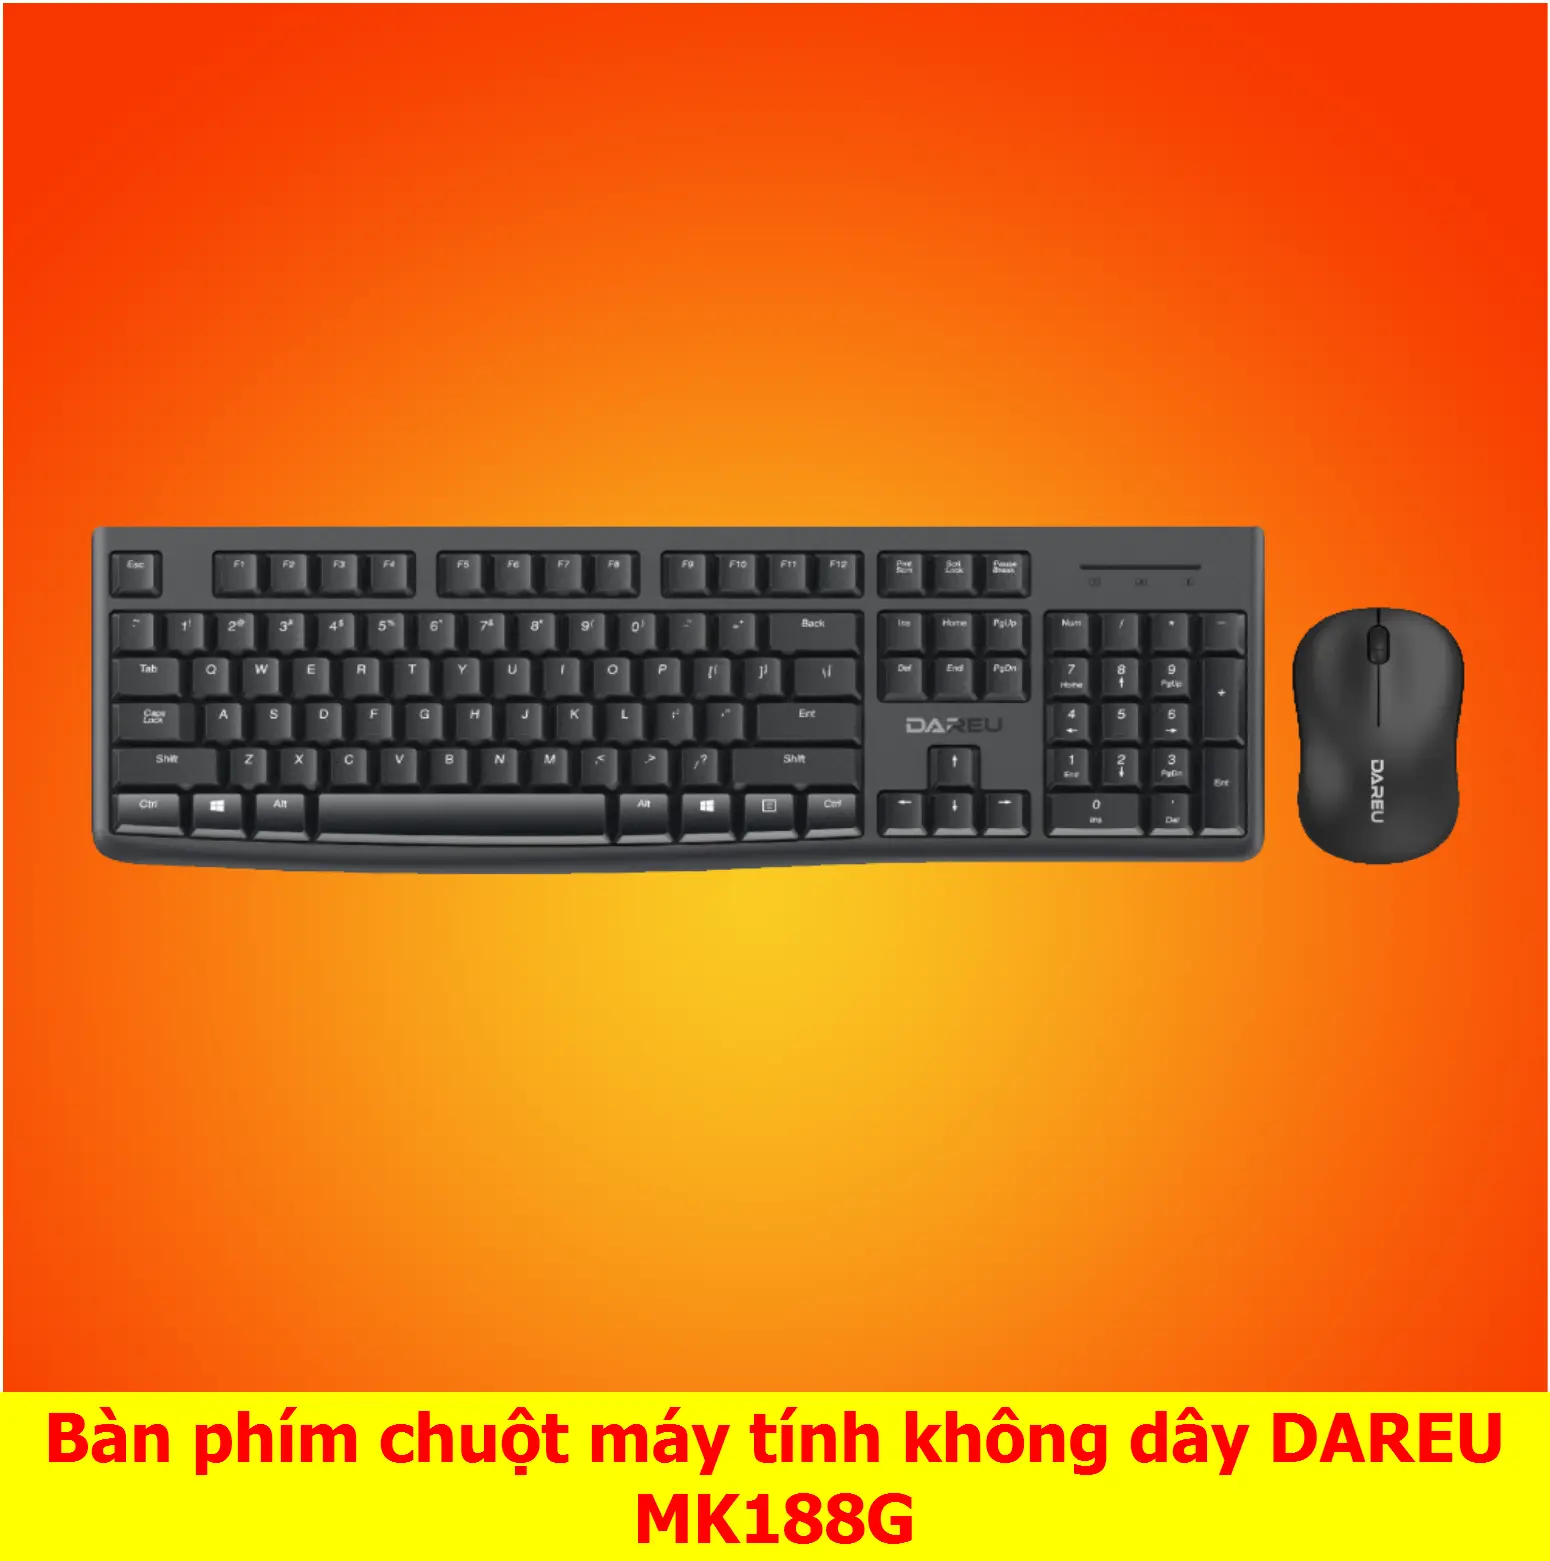 Bộ bàn phím, chuột DareU MK188G - Protech Computer